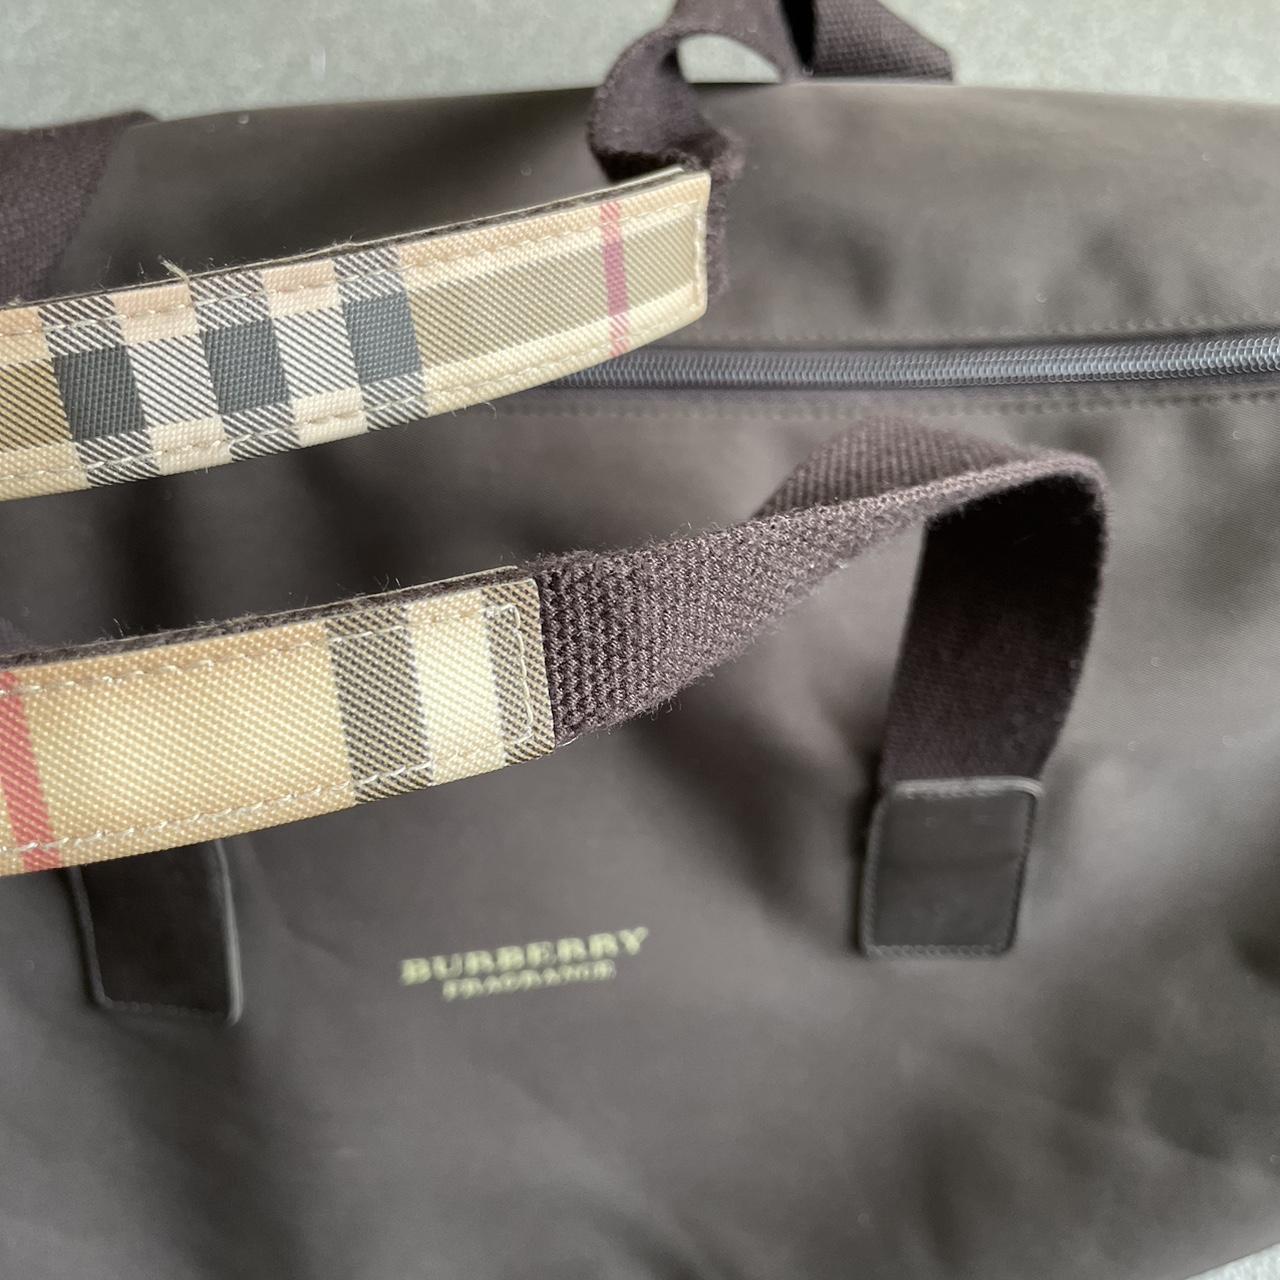 Burberry duffel bag (large size) WASHED BLACK/DEEP... - Depop